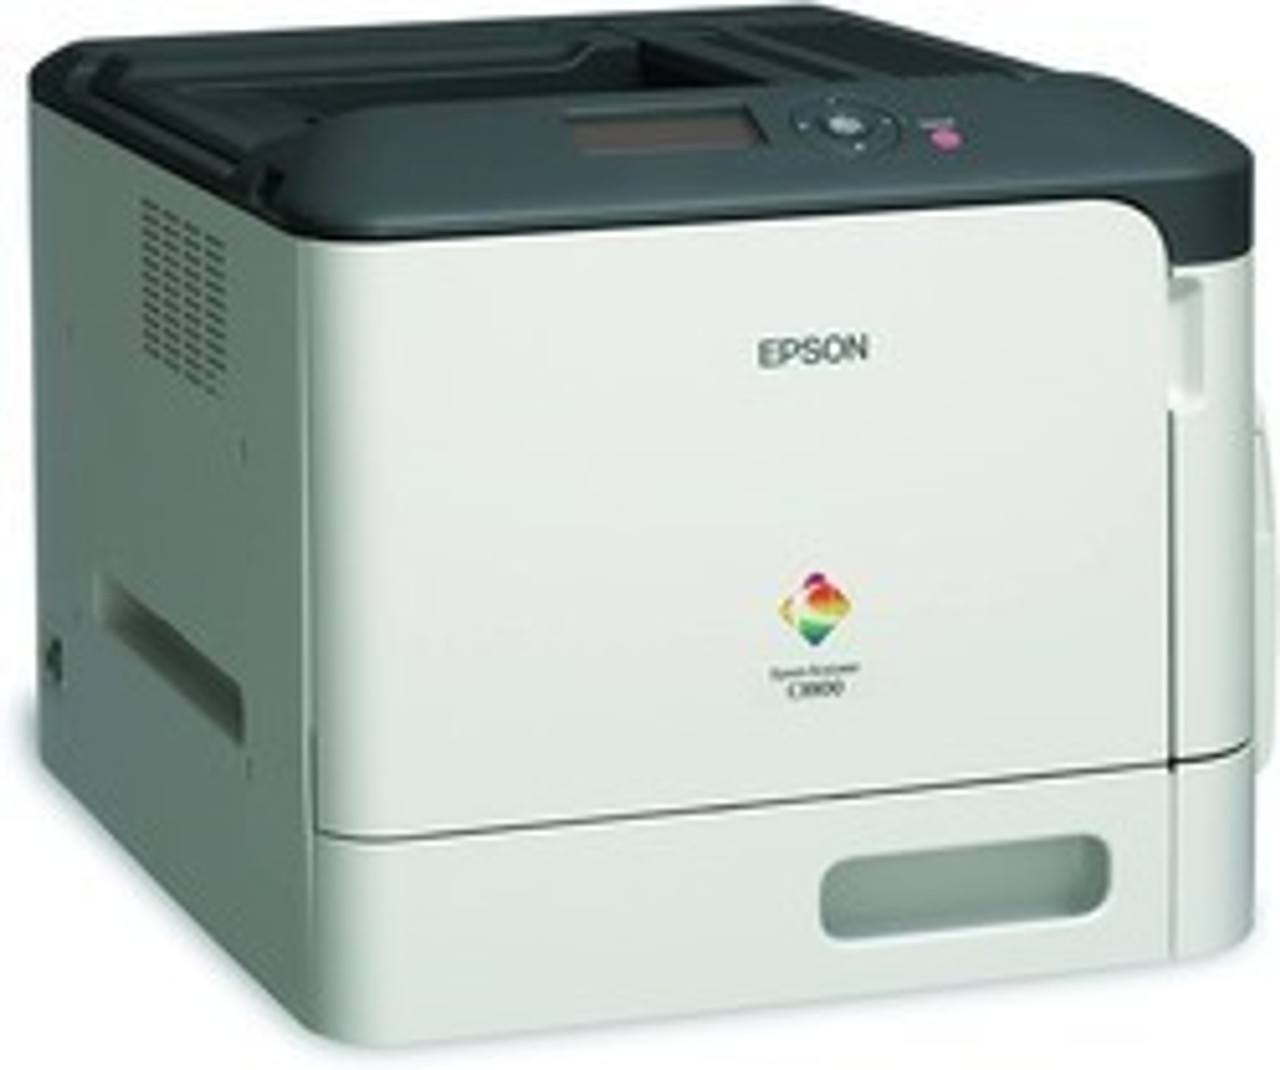 Epson AcuLaser C3900DN